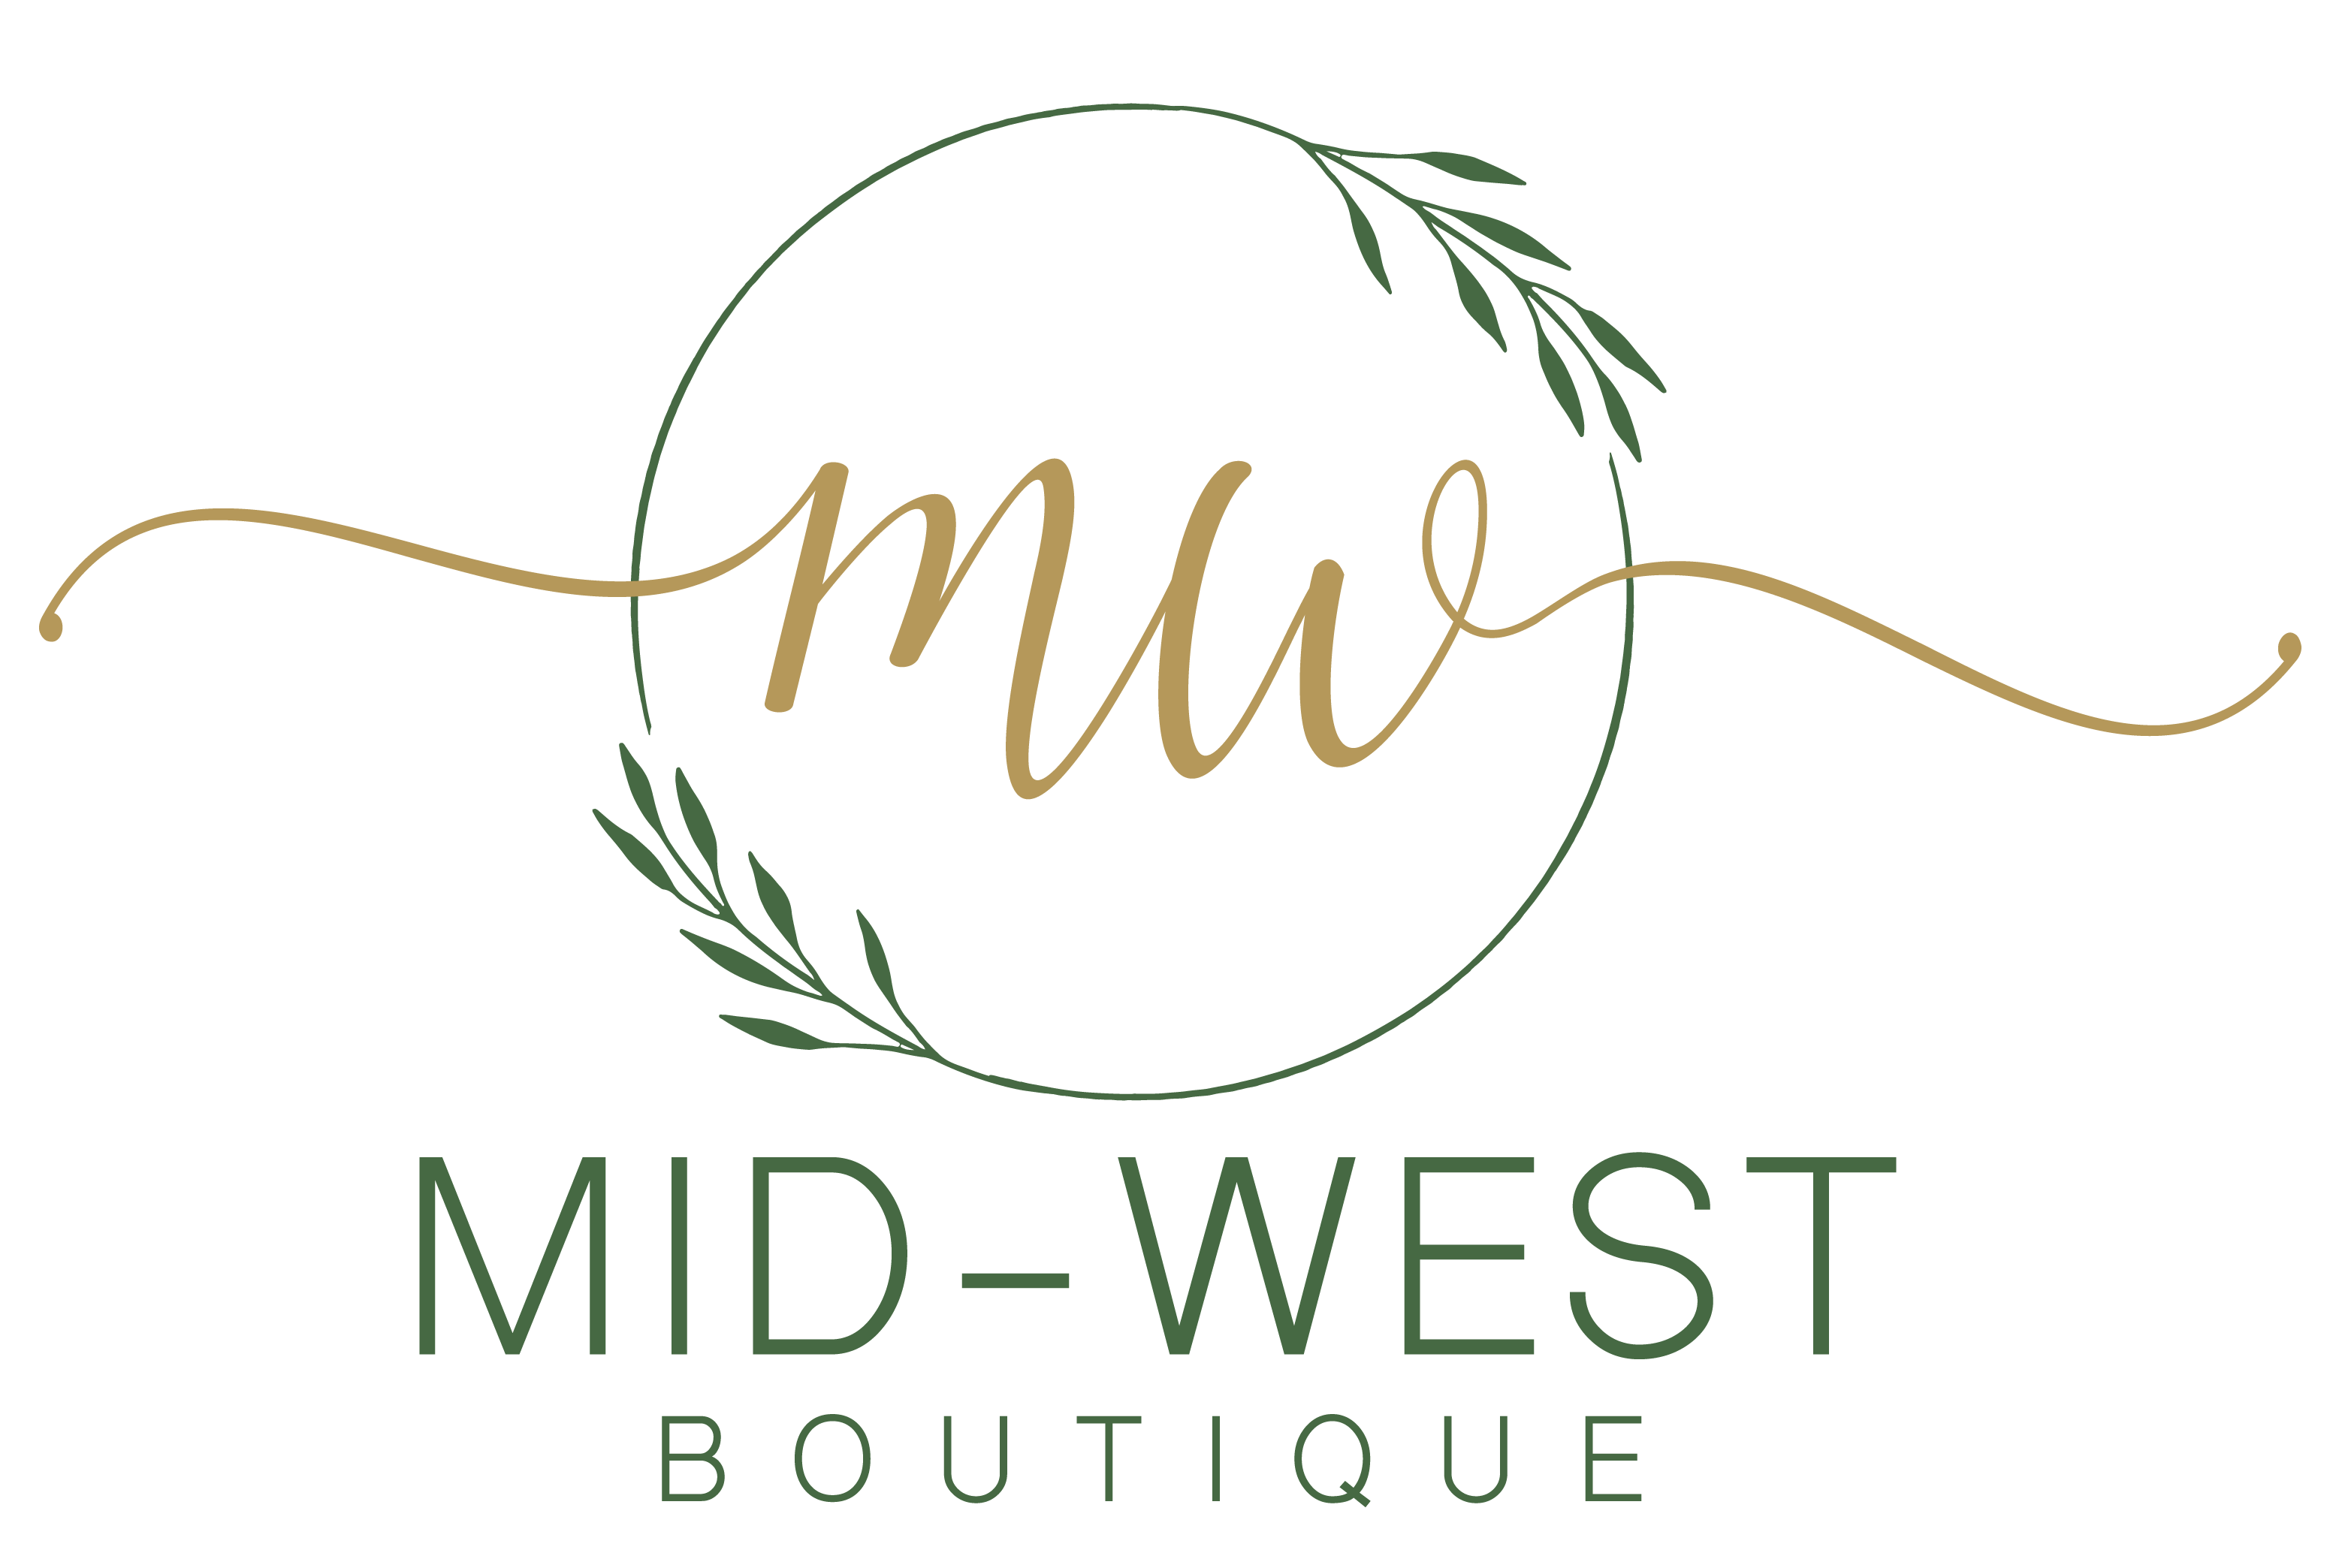 Mid-West Boutique